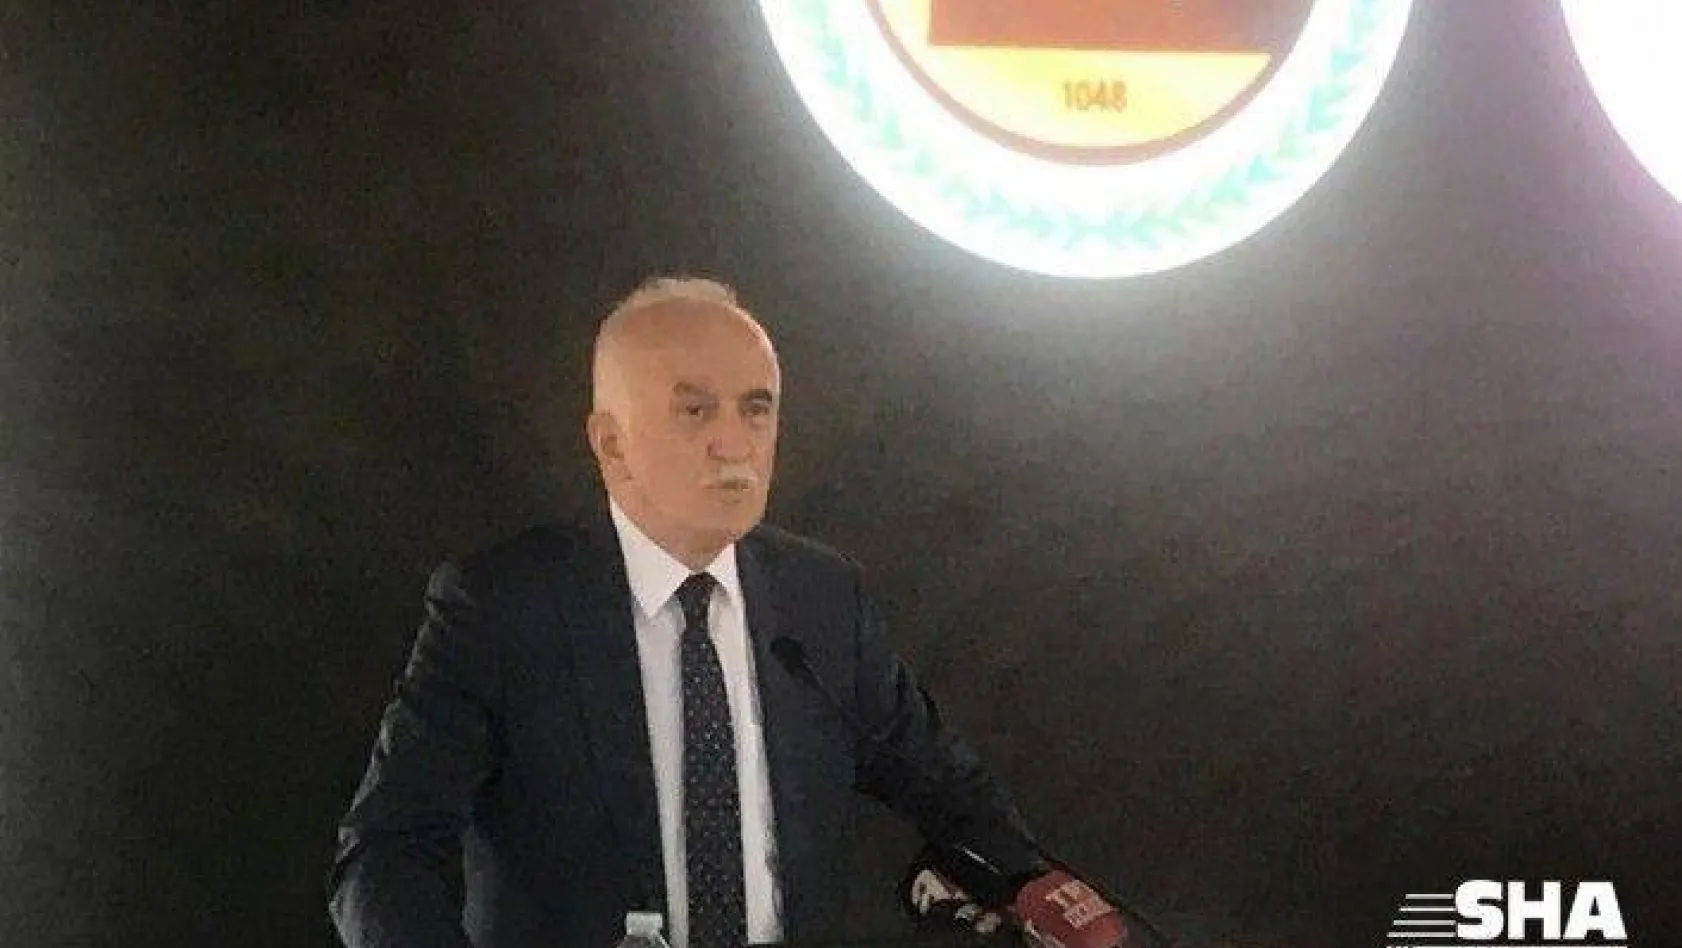 Vakıflar Genel Müdürü Burhan Ersoy Galata Kulesi'ndeki iddialar için açıklamada bulundu